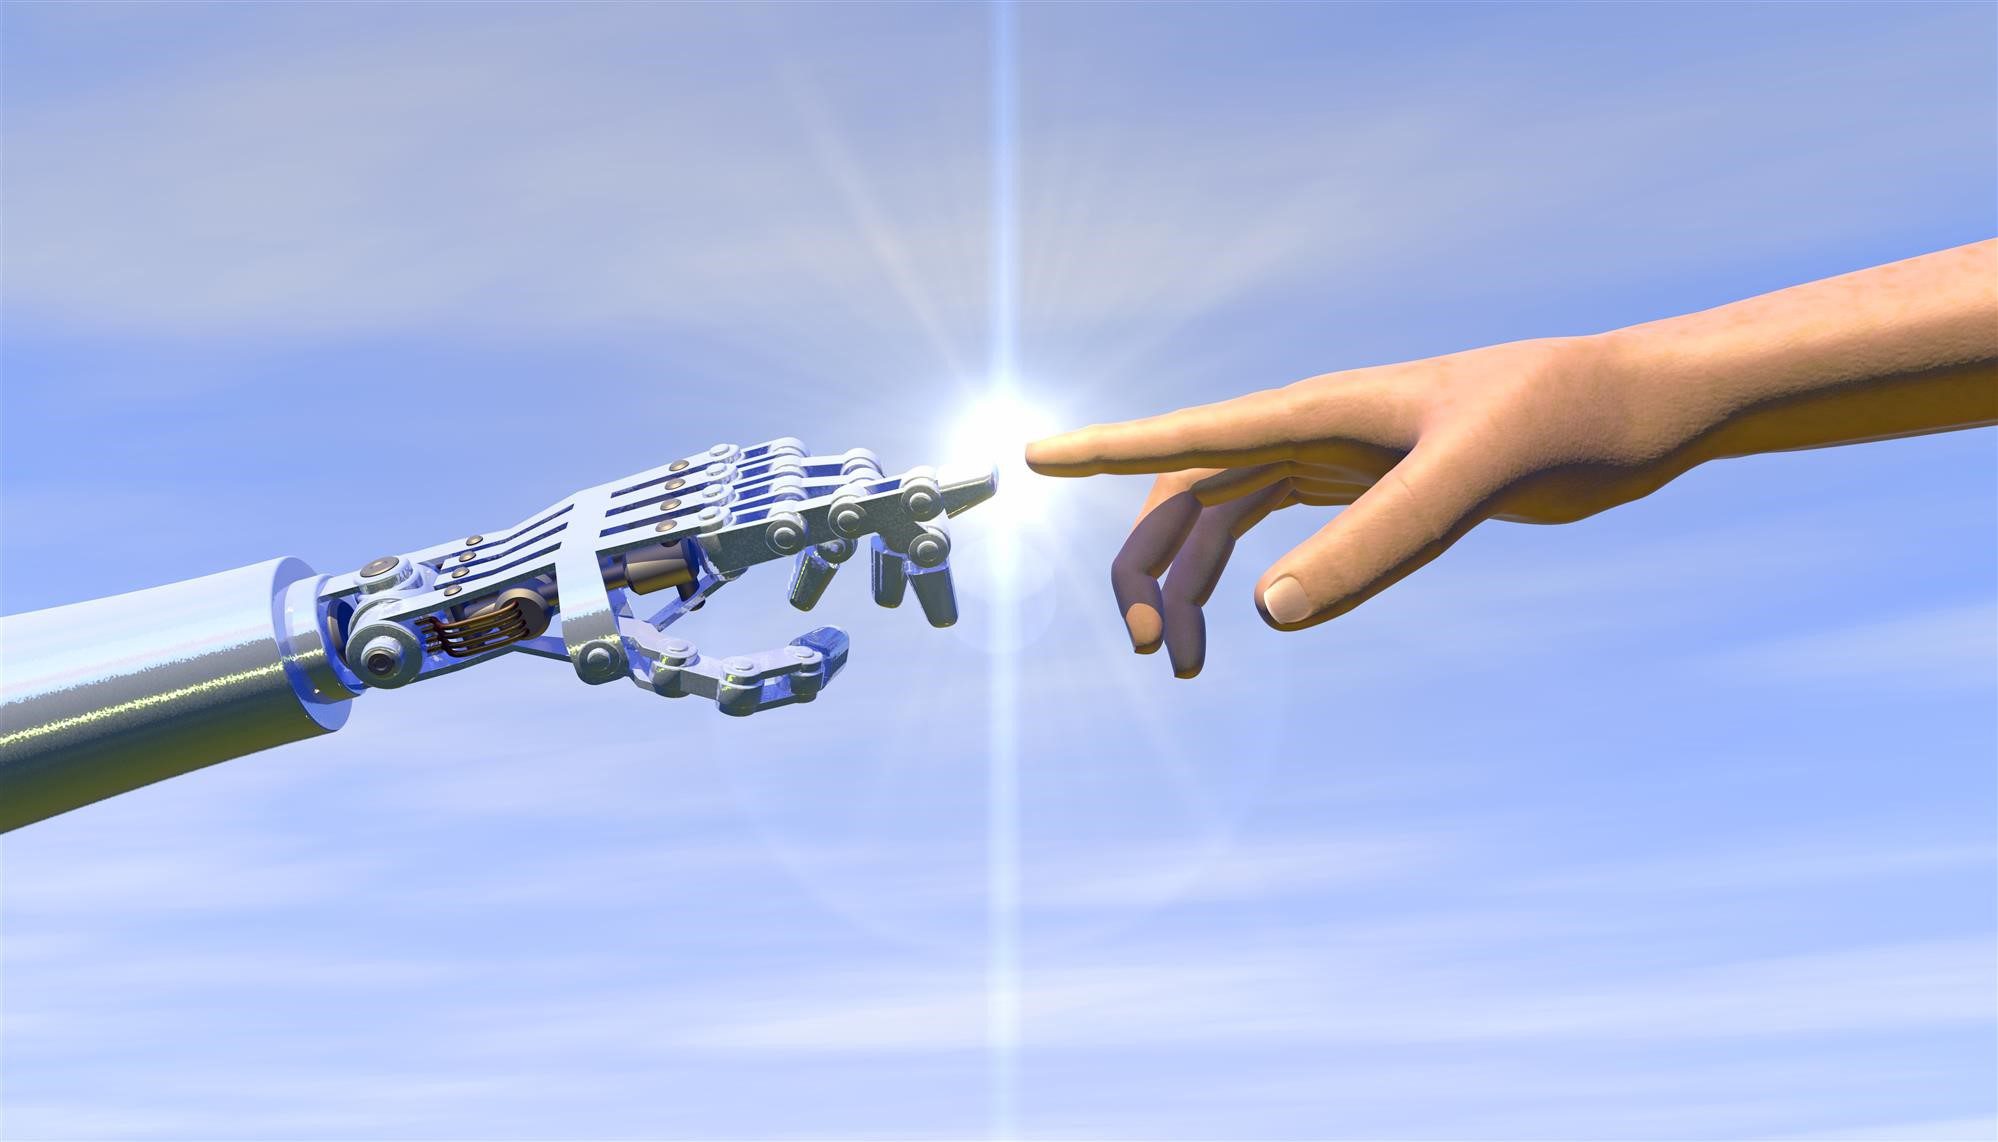 Robot hand touching a human hand